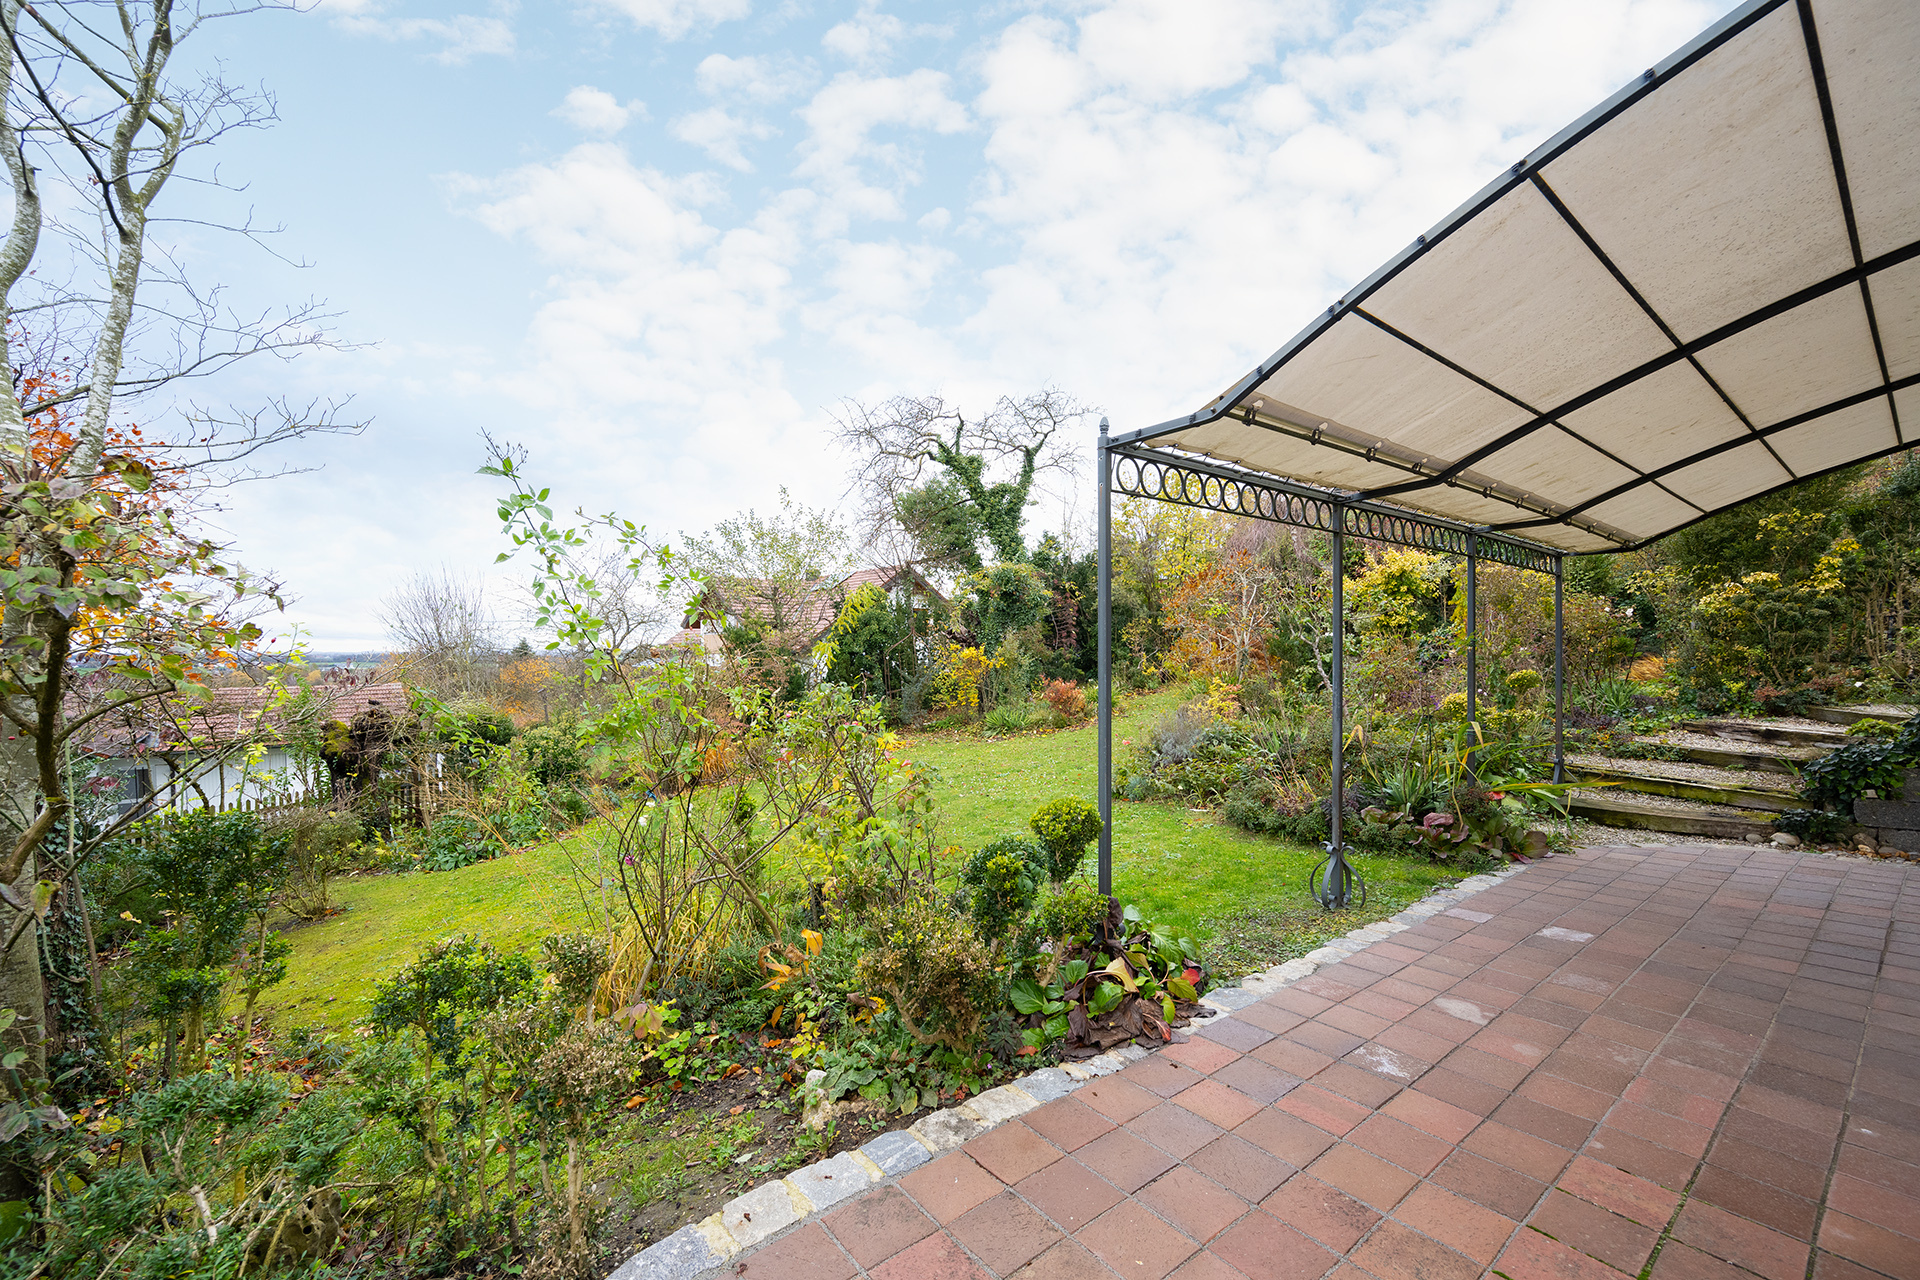 Extravagantes Splitlevel-Einfamilienhaus mit zauberhaften Garten und phantastischen Ausblick - Umlaufende Terrasse mit Garten